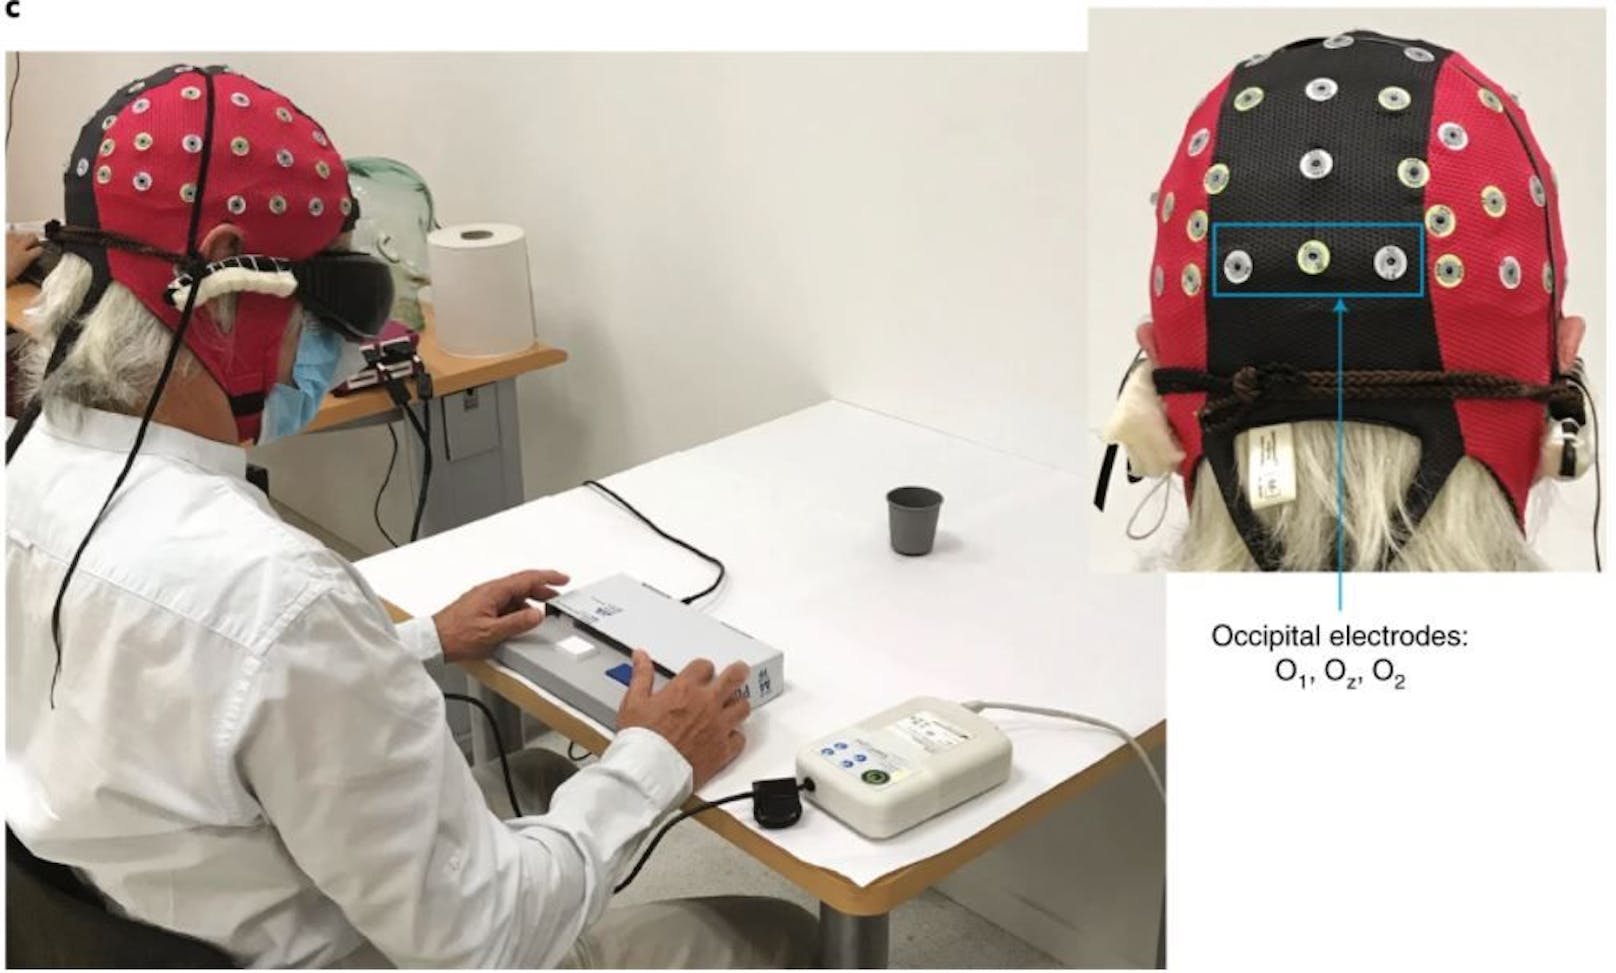 Bei einem Versuch sollte der Patient Knöpfe drücken, um anzugeben, ob sich ein Glas auf dem Tisch vor ihm befand oder nicht. Dabei trug er eine Kopfhaube mit Elektroden, die ein Elektro-Enzephalogramm (EEG) seiner Gehirnaktivität aufzeichneten. Die Auswertung der EEG-Messungen zeigte, dass sich die Aktivität im visuellen Kortex seines Gehirns entsprechend änderte, je nachdem, ob das Glas vorhanden war oder nicht. Damit konnten die Forschenden bestätigen, dass die Gehirnaktivität tatsächlich mit einem visuellen Objekt in Verbindung stand und die Netzhaut nicht mehr blind war.